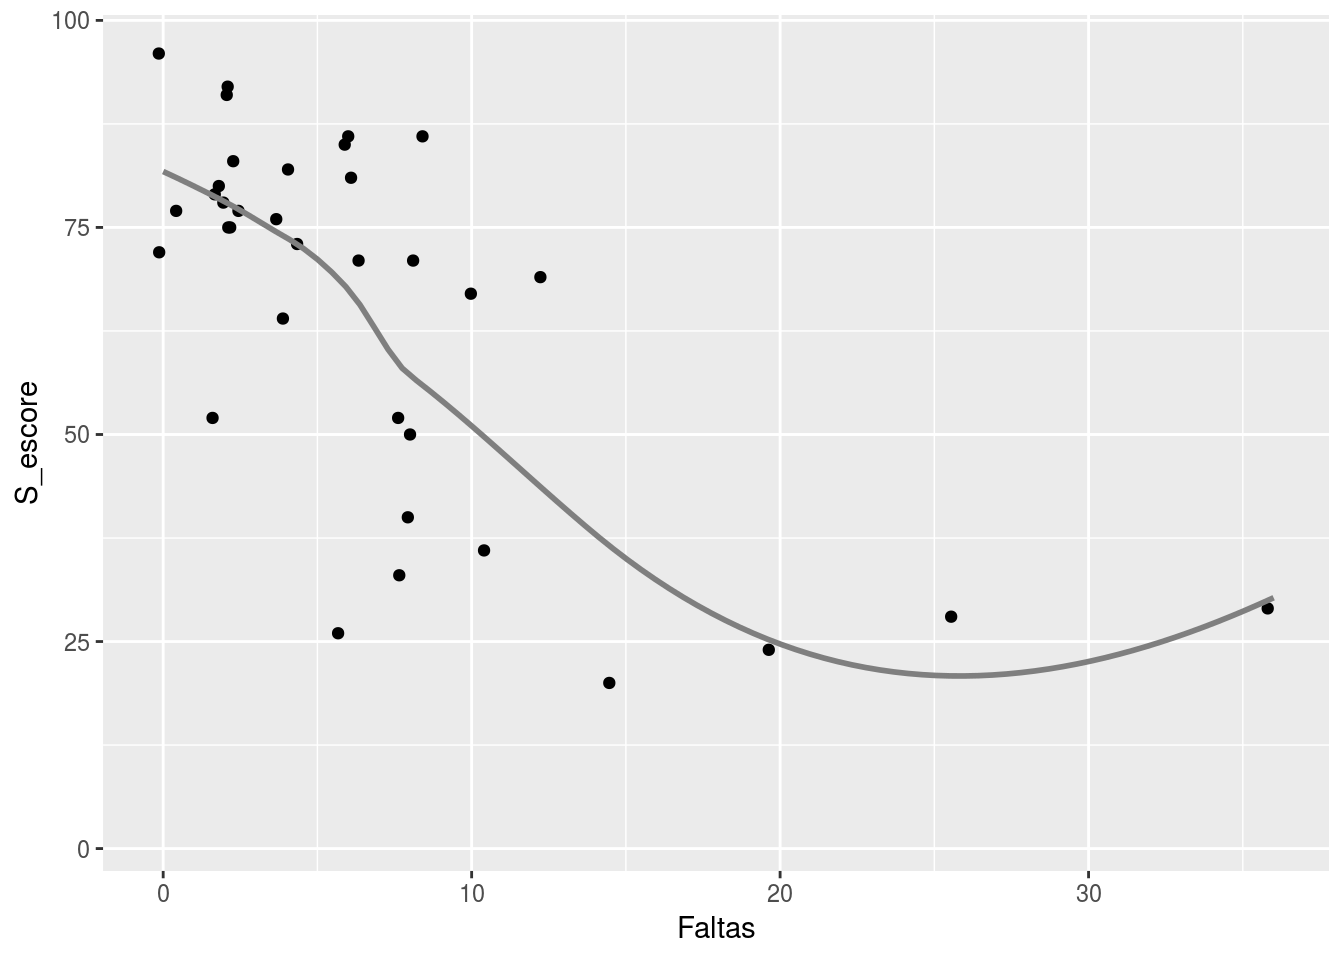 **Figura 2**: Diagrama de dispersão que relaciona o escore final nas sabatinas e o número de faltas de cada aluno (Correlação de Spearman: rho = -0.65, valor p = 2.54e-05).